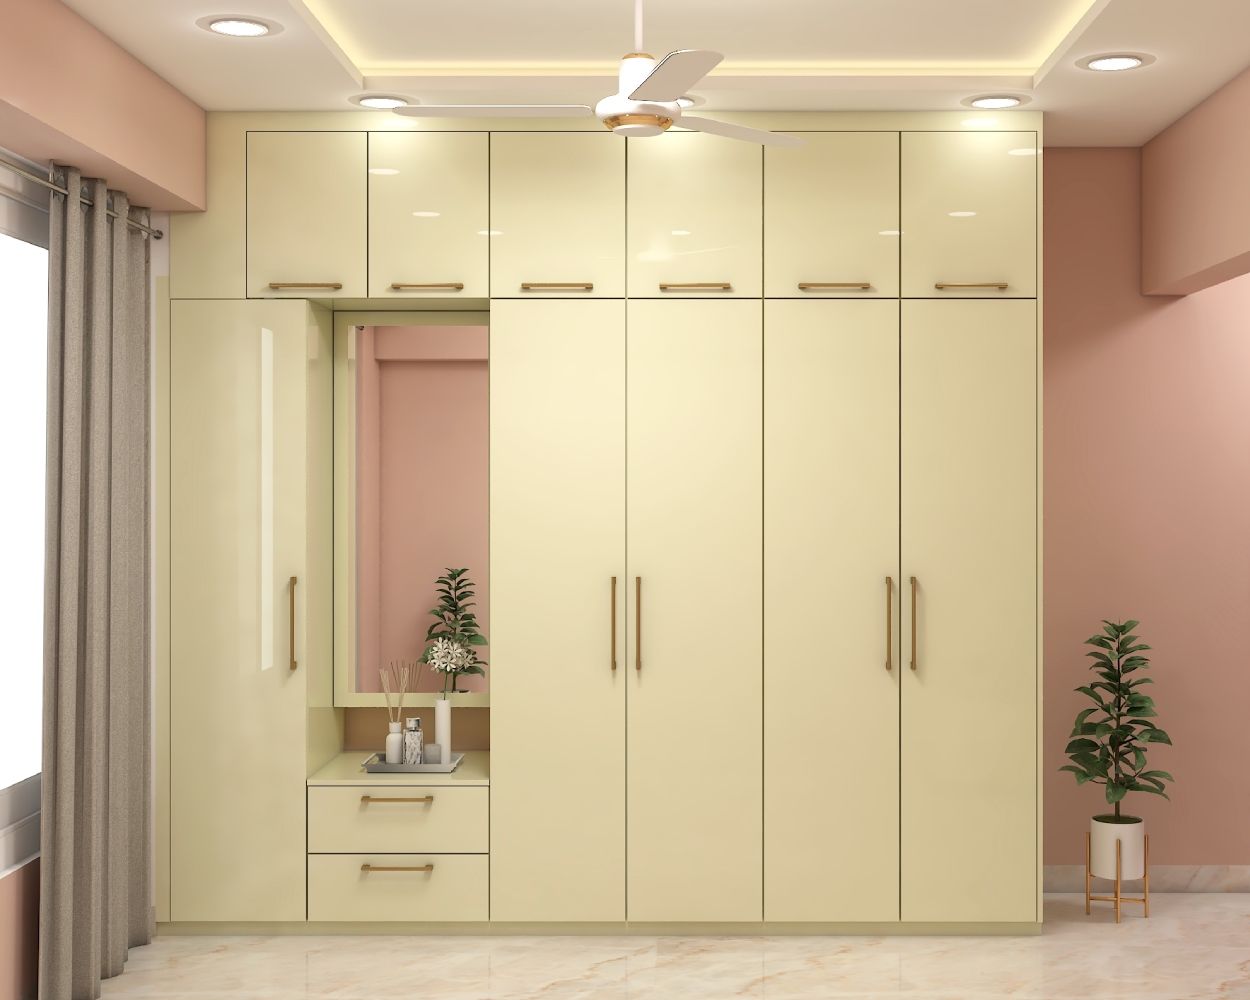 Modern 5-Door Swing Wardrobe Design With Mirror In Cream Tones